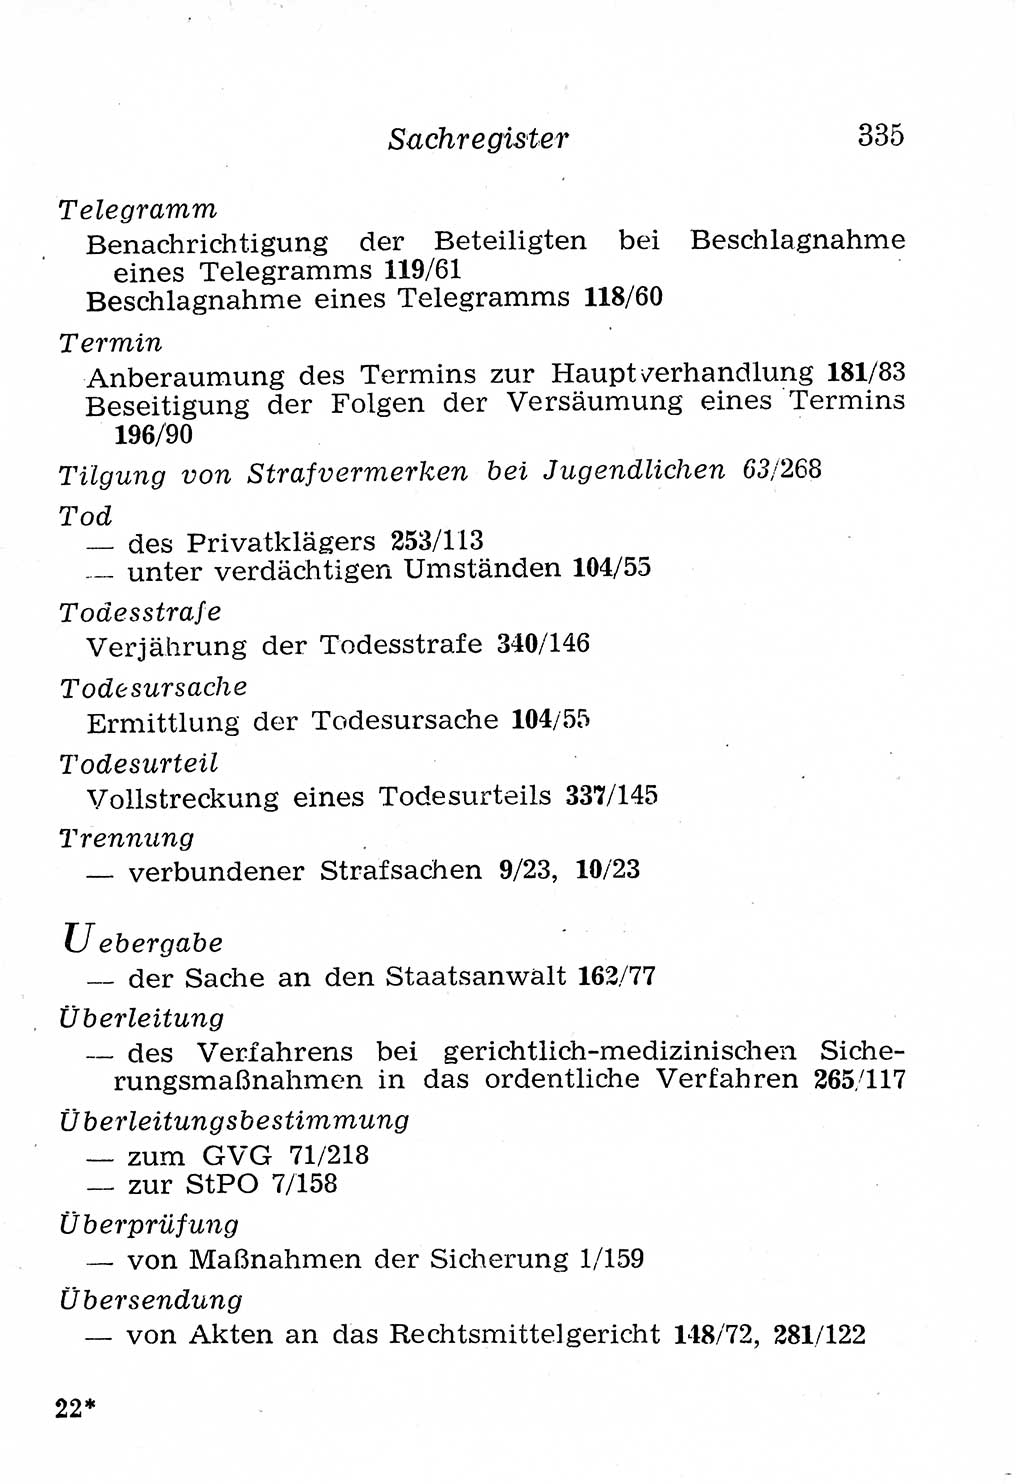 Strafprozeßordnung (StPO), Gerichtsverfassungsgesetz (GVG), Staatsanwaltsgesetz (StAG), Jugendgerichtsgesetz (JGG) und Strafregistergesetz (StRegG) [Deutsche Demokratische Republik (DDR)] 1958, Seite 335 (StPO GVG StAG JGG StRegG DDR 1958, S. 335)